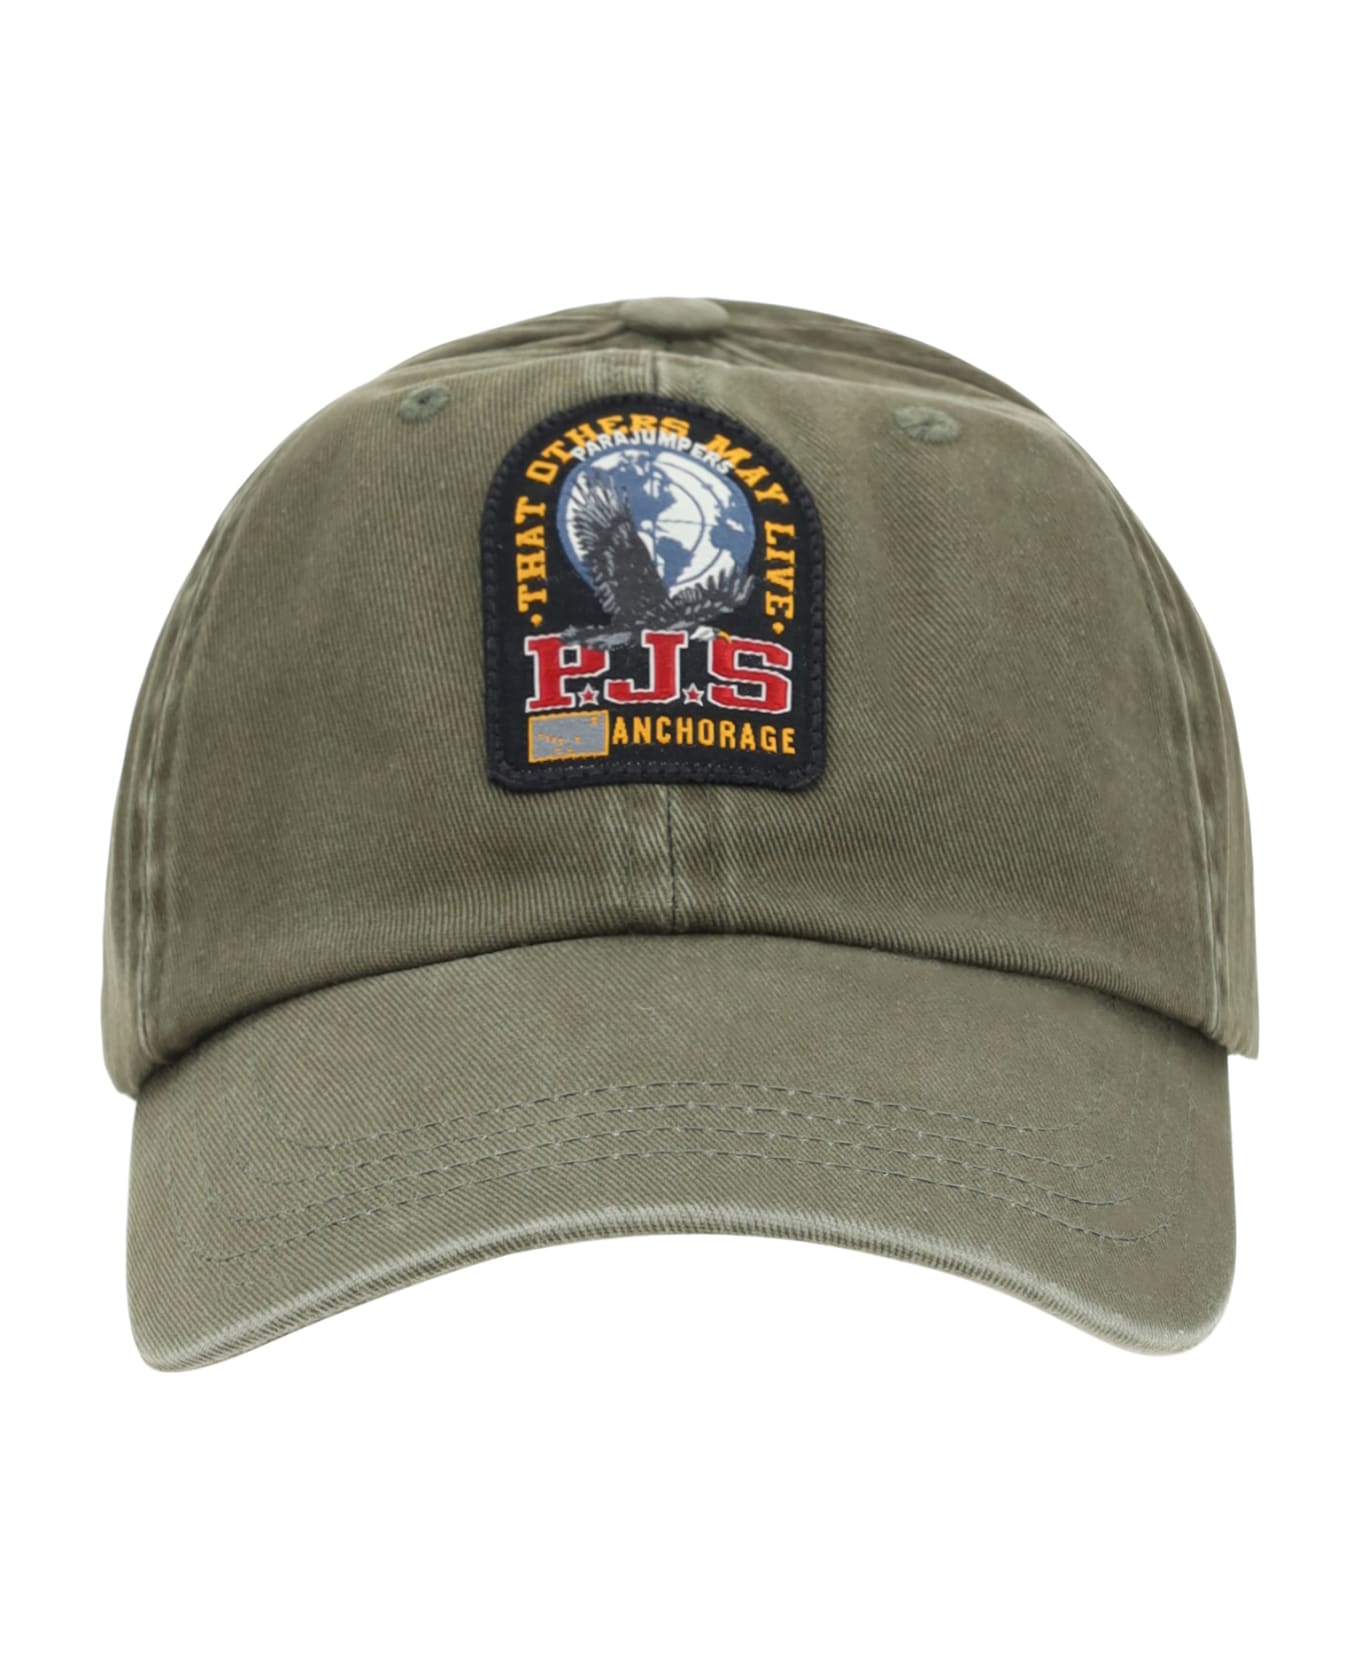 Parajumpers Baseball Cap - Toubre 帽子